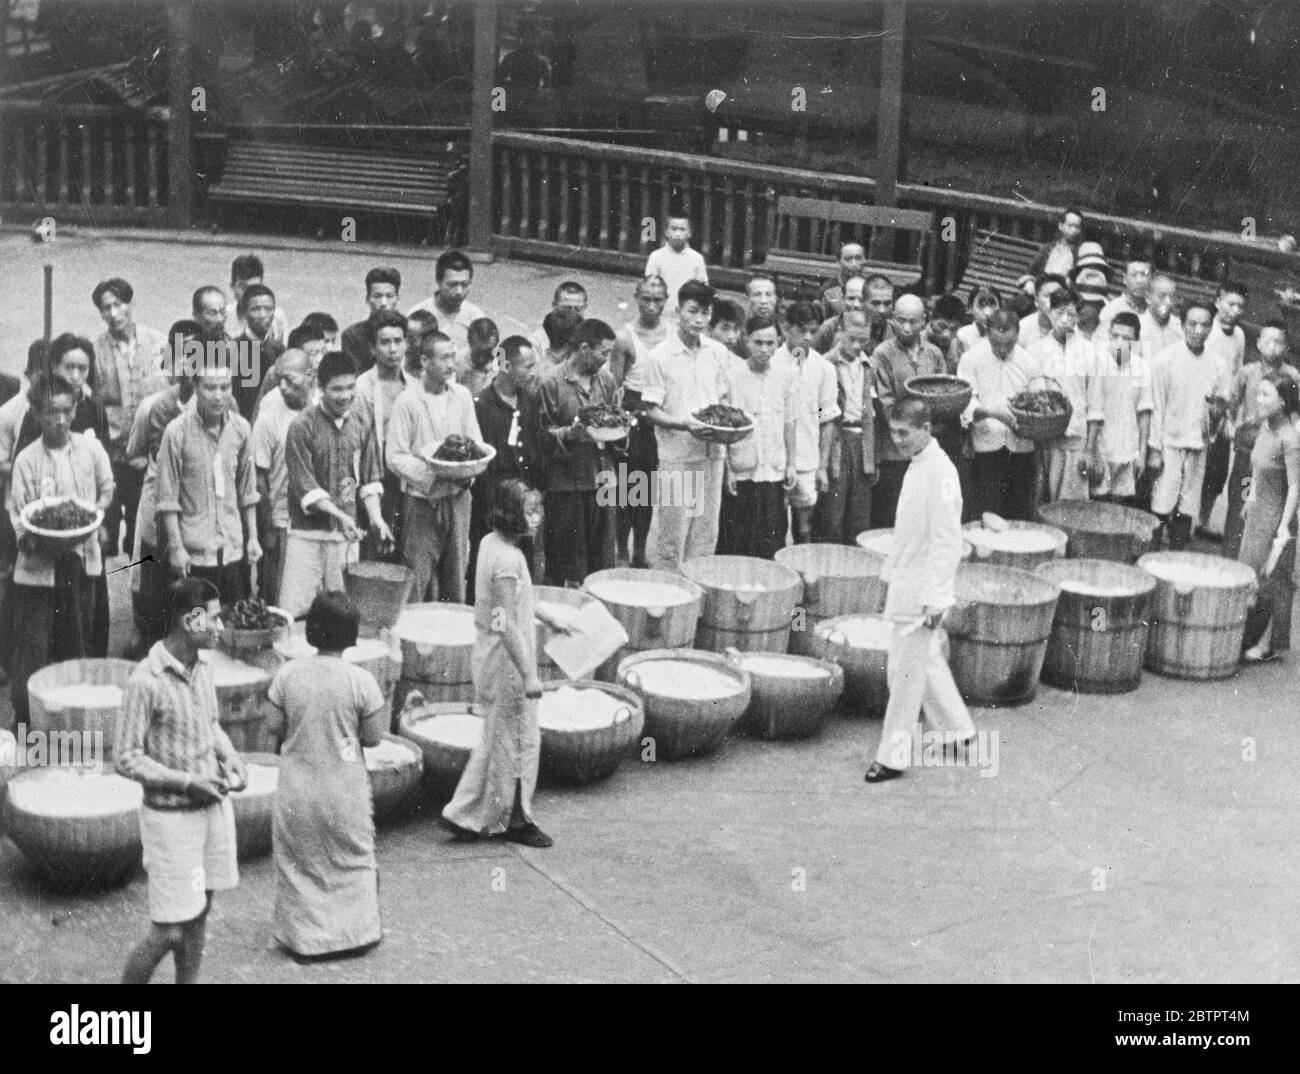 Nahrung für Kriegsopfer. Eine Reihe von großen Schalen mit Lebensmitteln gefüllt, die die Augen der hungrigen chinesischen Flüchtlinge erfreut, die ihre Rationen in Shanghai erwartet. 25. November 1937 Stockfoto